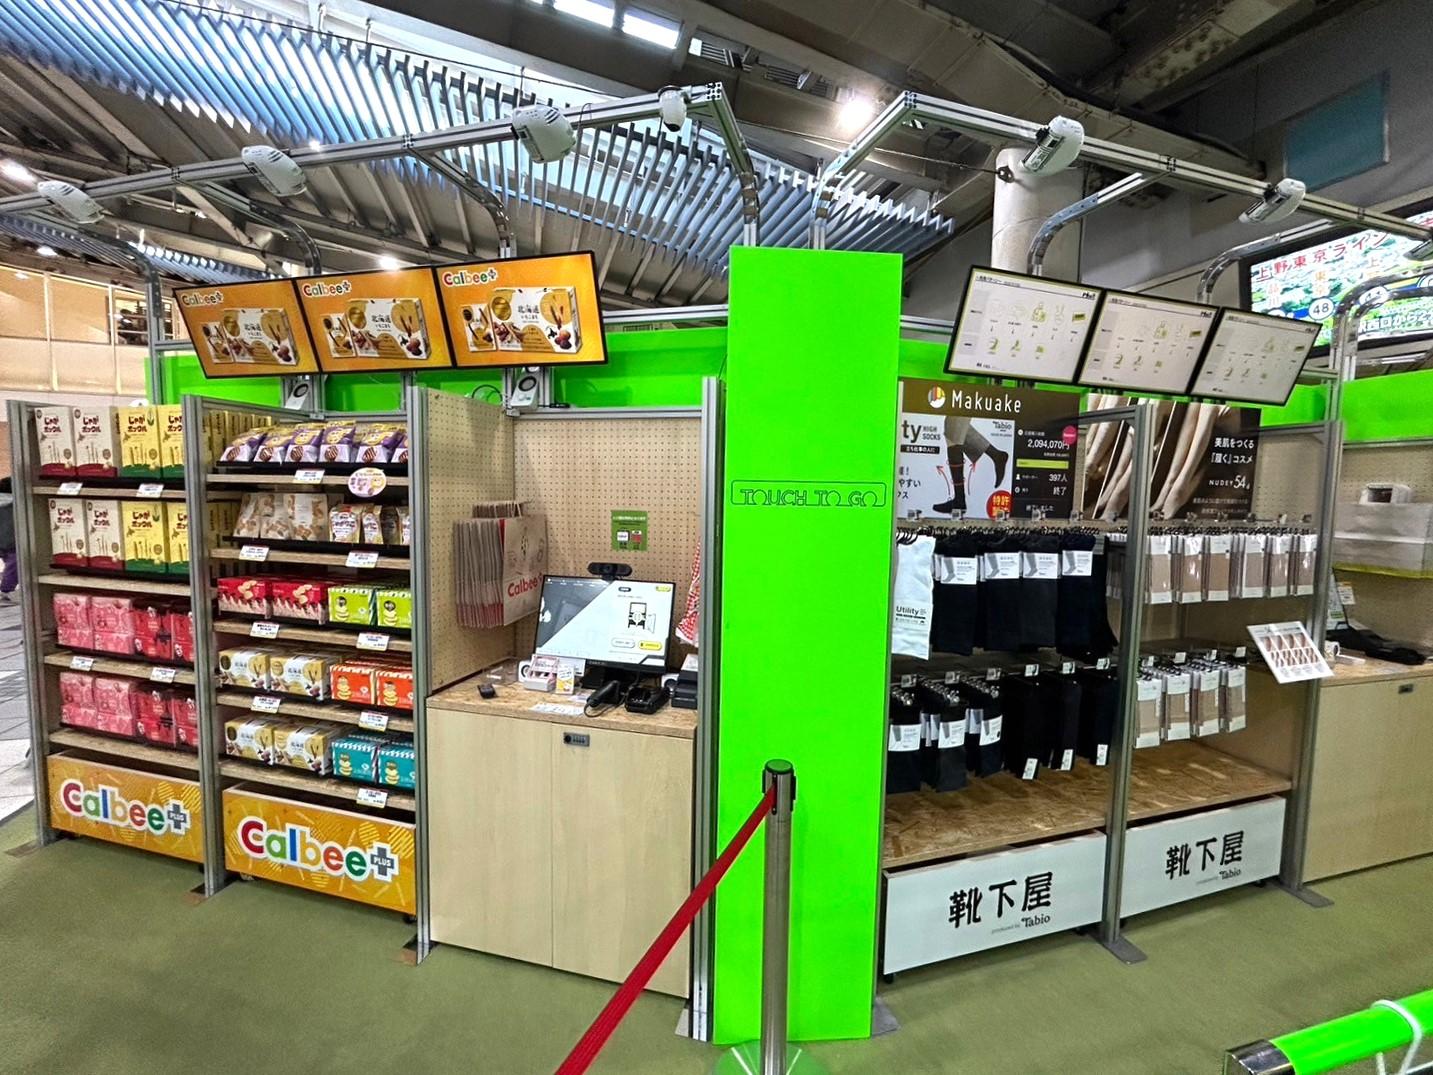 品川駅に「触れる自販機」登場。無人決済×省スペース需要が多数、無人コンビニのTTGが開発